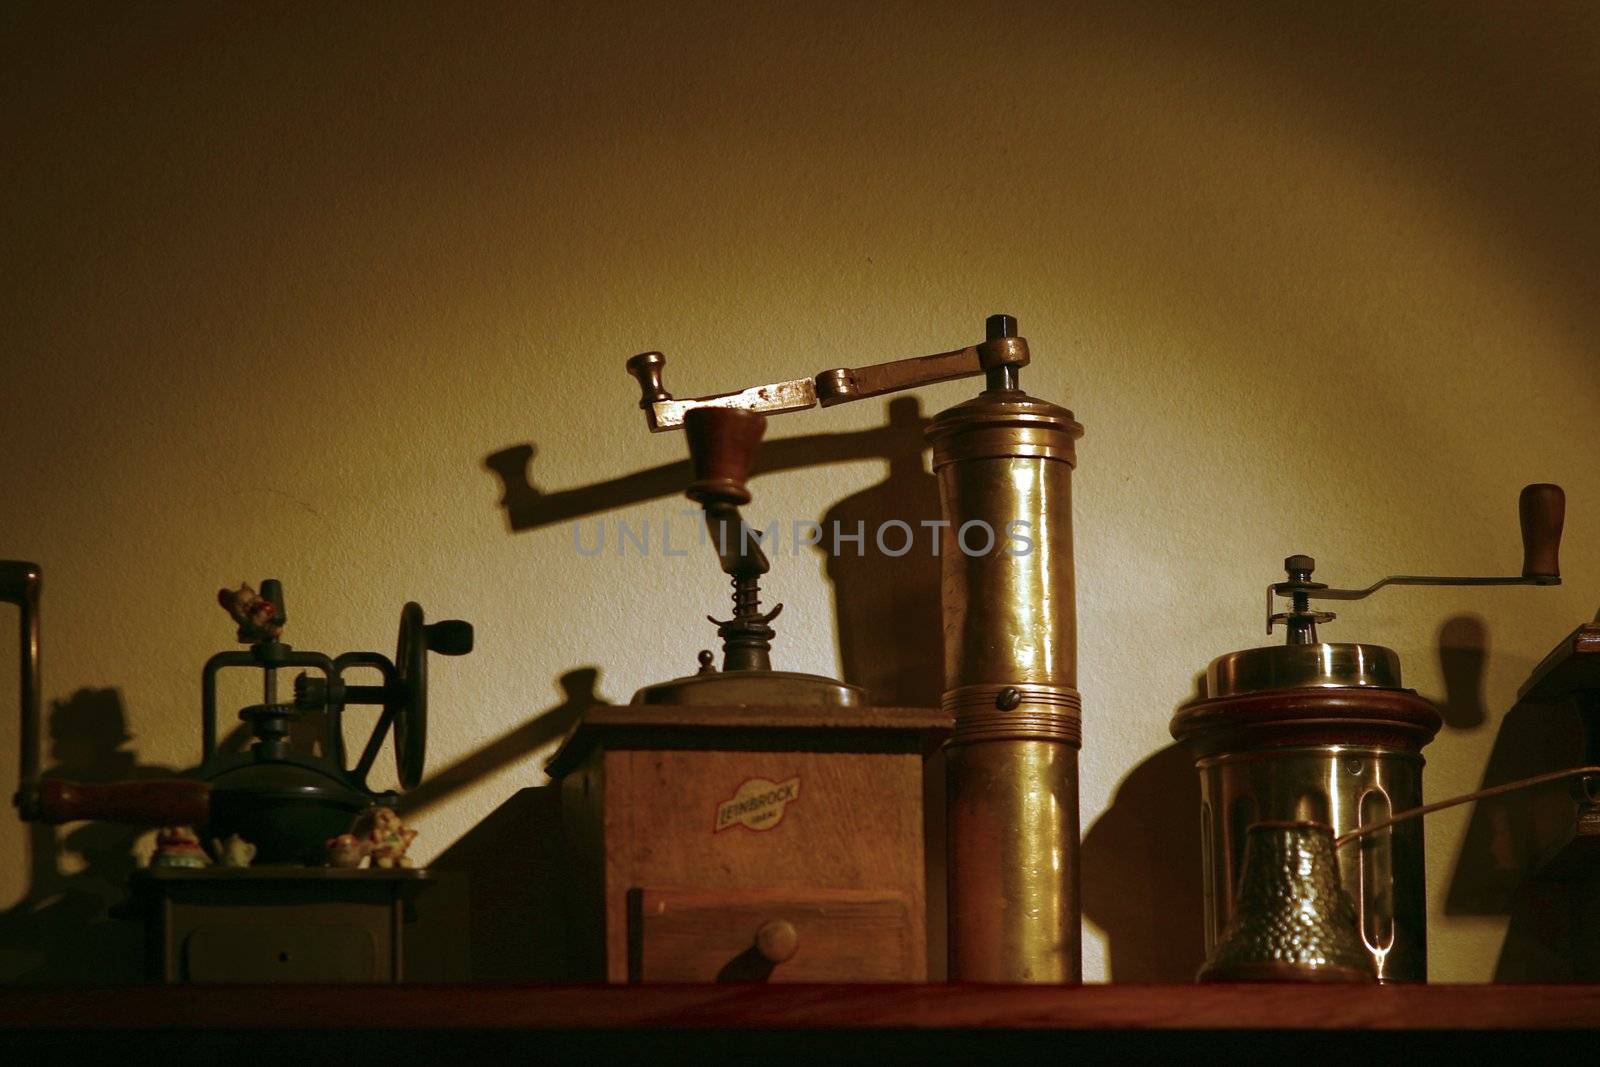 Old coffe grinder